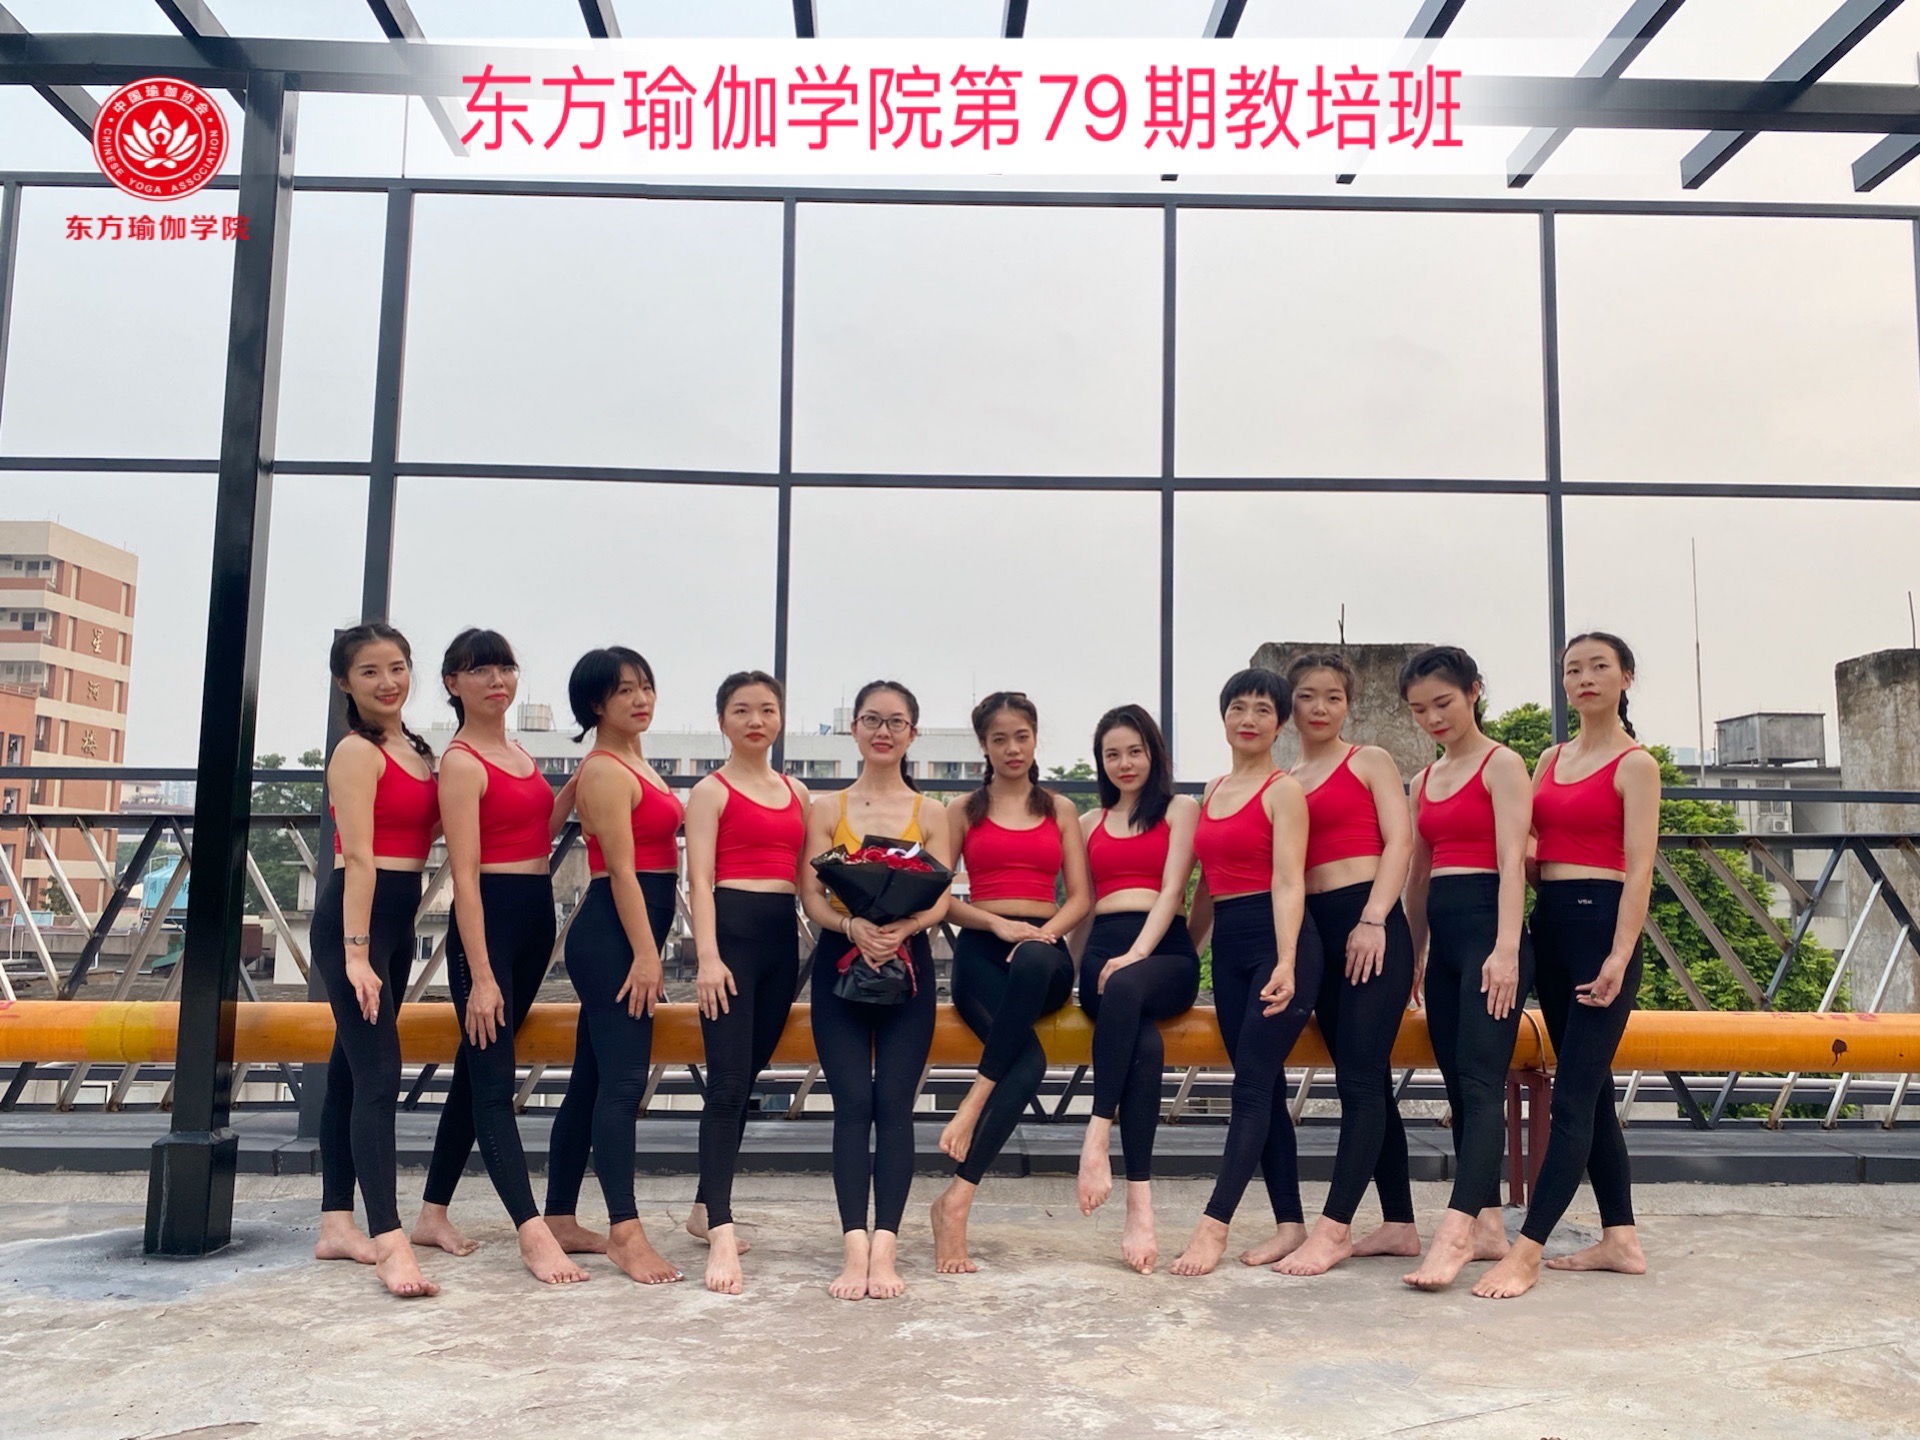 广州专业瑜伽教练培训学校